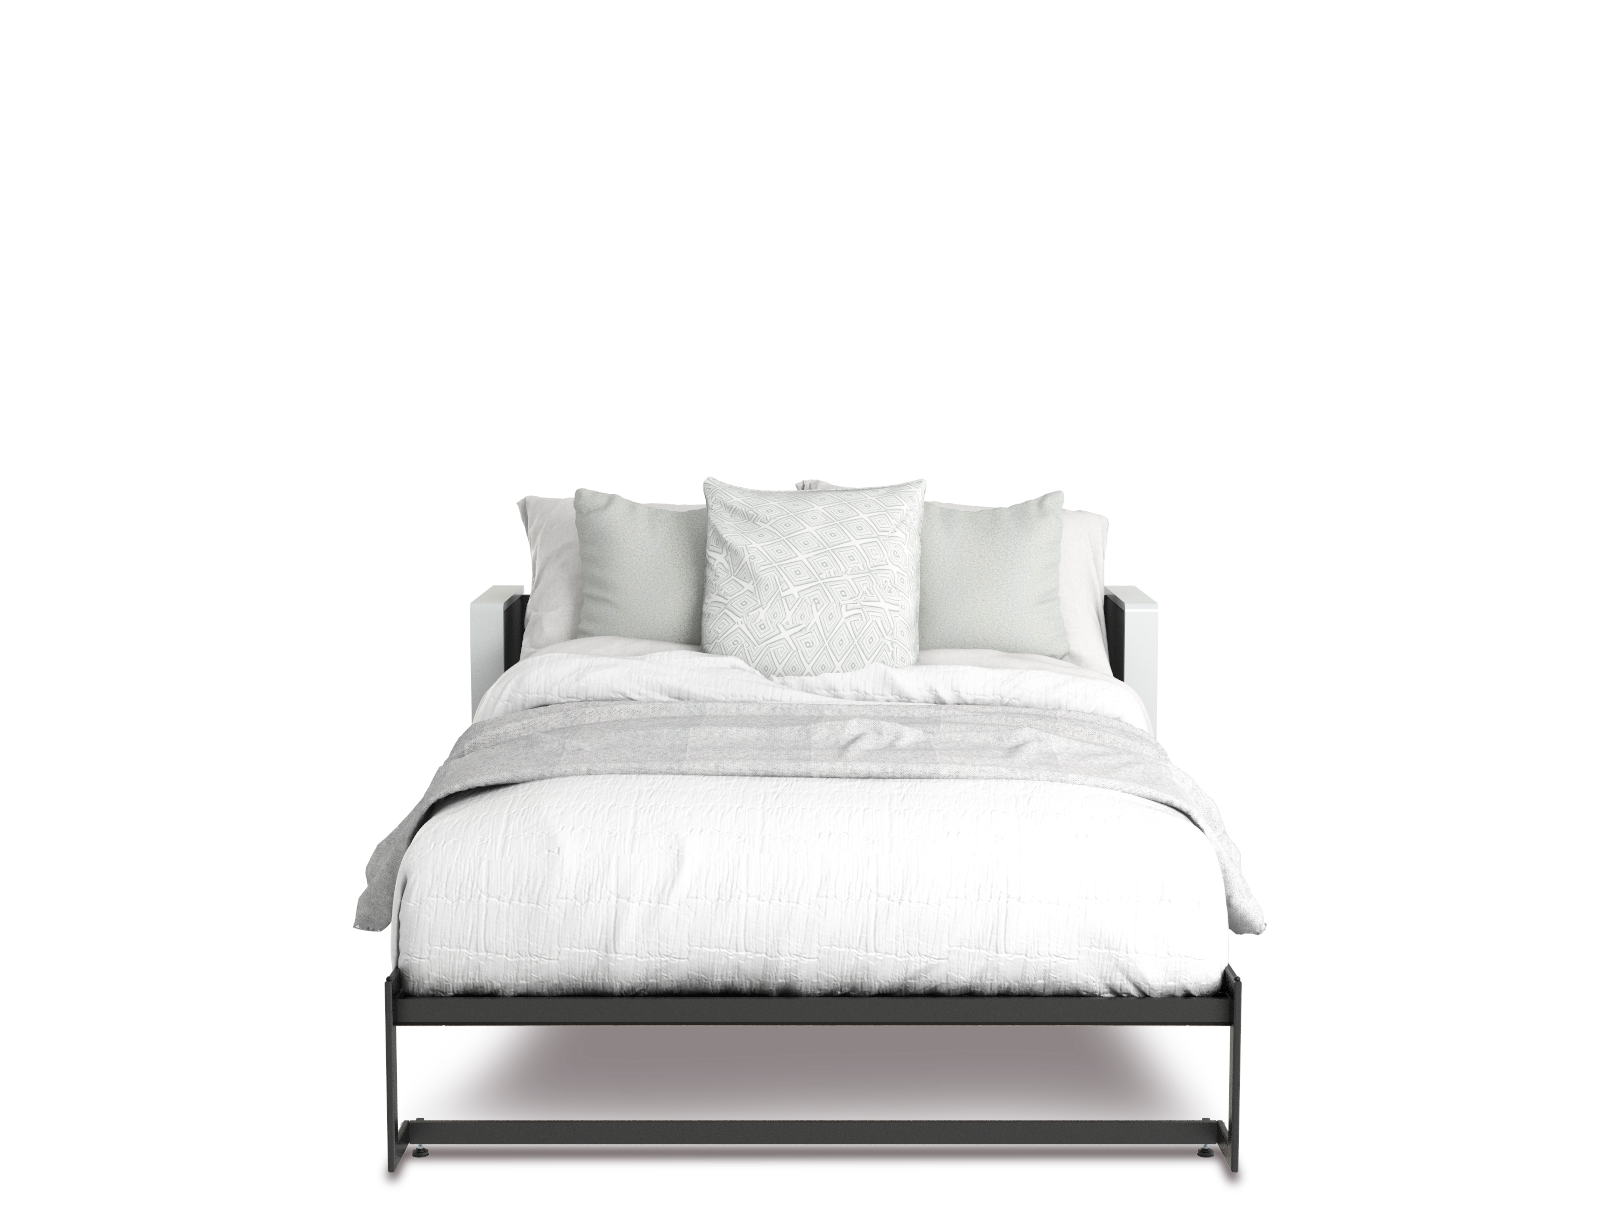 Esentelle base de cama matrimonial con laminado de madera color titanio // MS